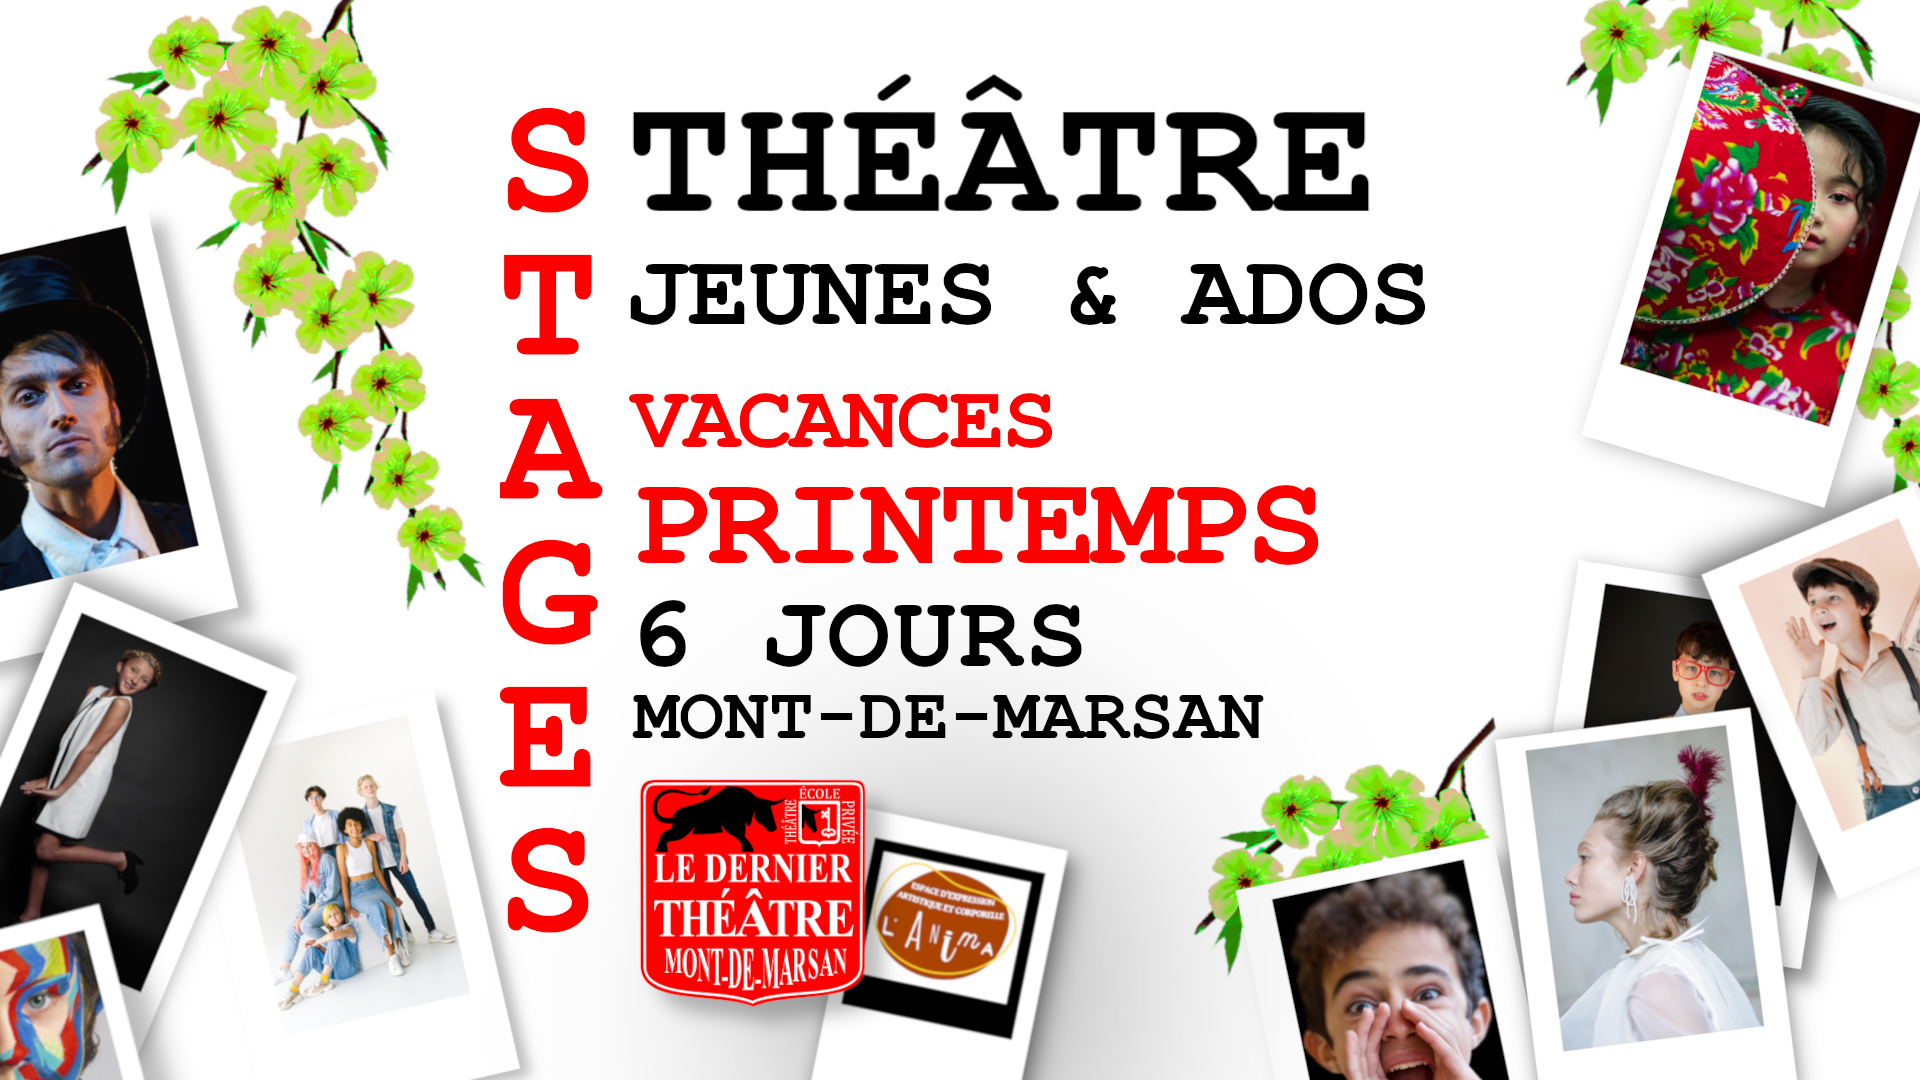 Le dernier théâtre - École privée art Dramatique - Stages Jeunes Ados Vacances Printemps